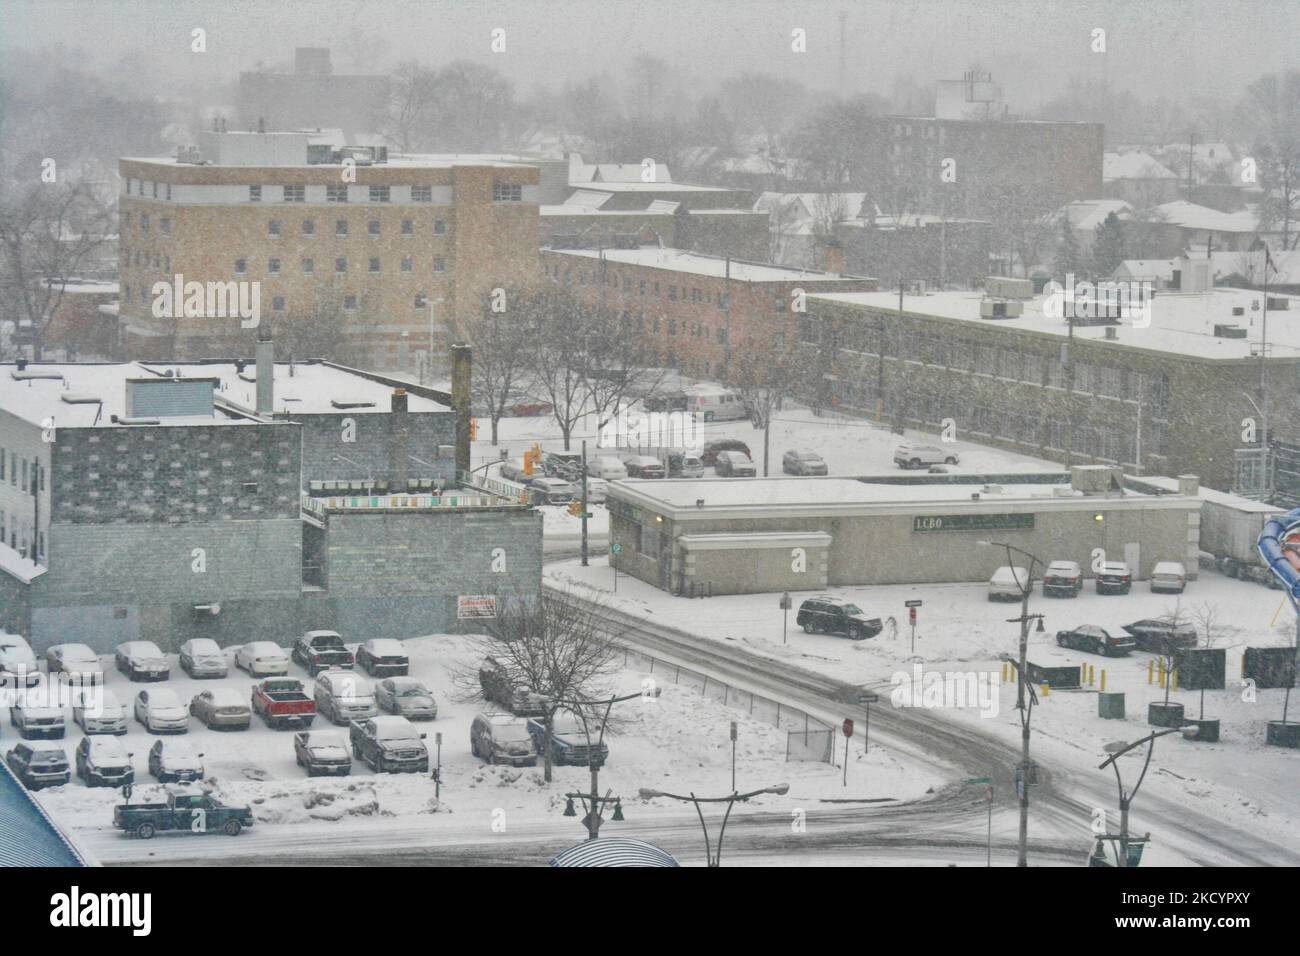 Am 3. März 2015 stürzte der Schneesturm große Mengen an Schnee, Schnee und eiskalten Regen auf die Stadt Windsor in Ontario, Kanada. Dieser Schneesturm warf zwischen 5-10 Zentimetern Schnee über weite Gebiete im Süden Ontarios. Der Schnee änderte sich später in eiskalten Regen, der mehrere Stromausfälle in der Region verursachte. (Foto von Creative Touch Imaging Ltd./NurPhoto) Stockfoto